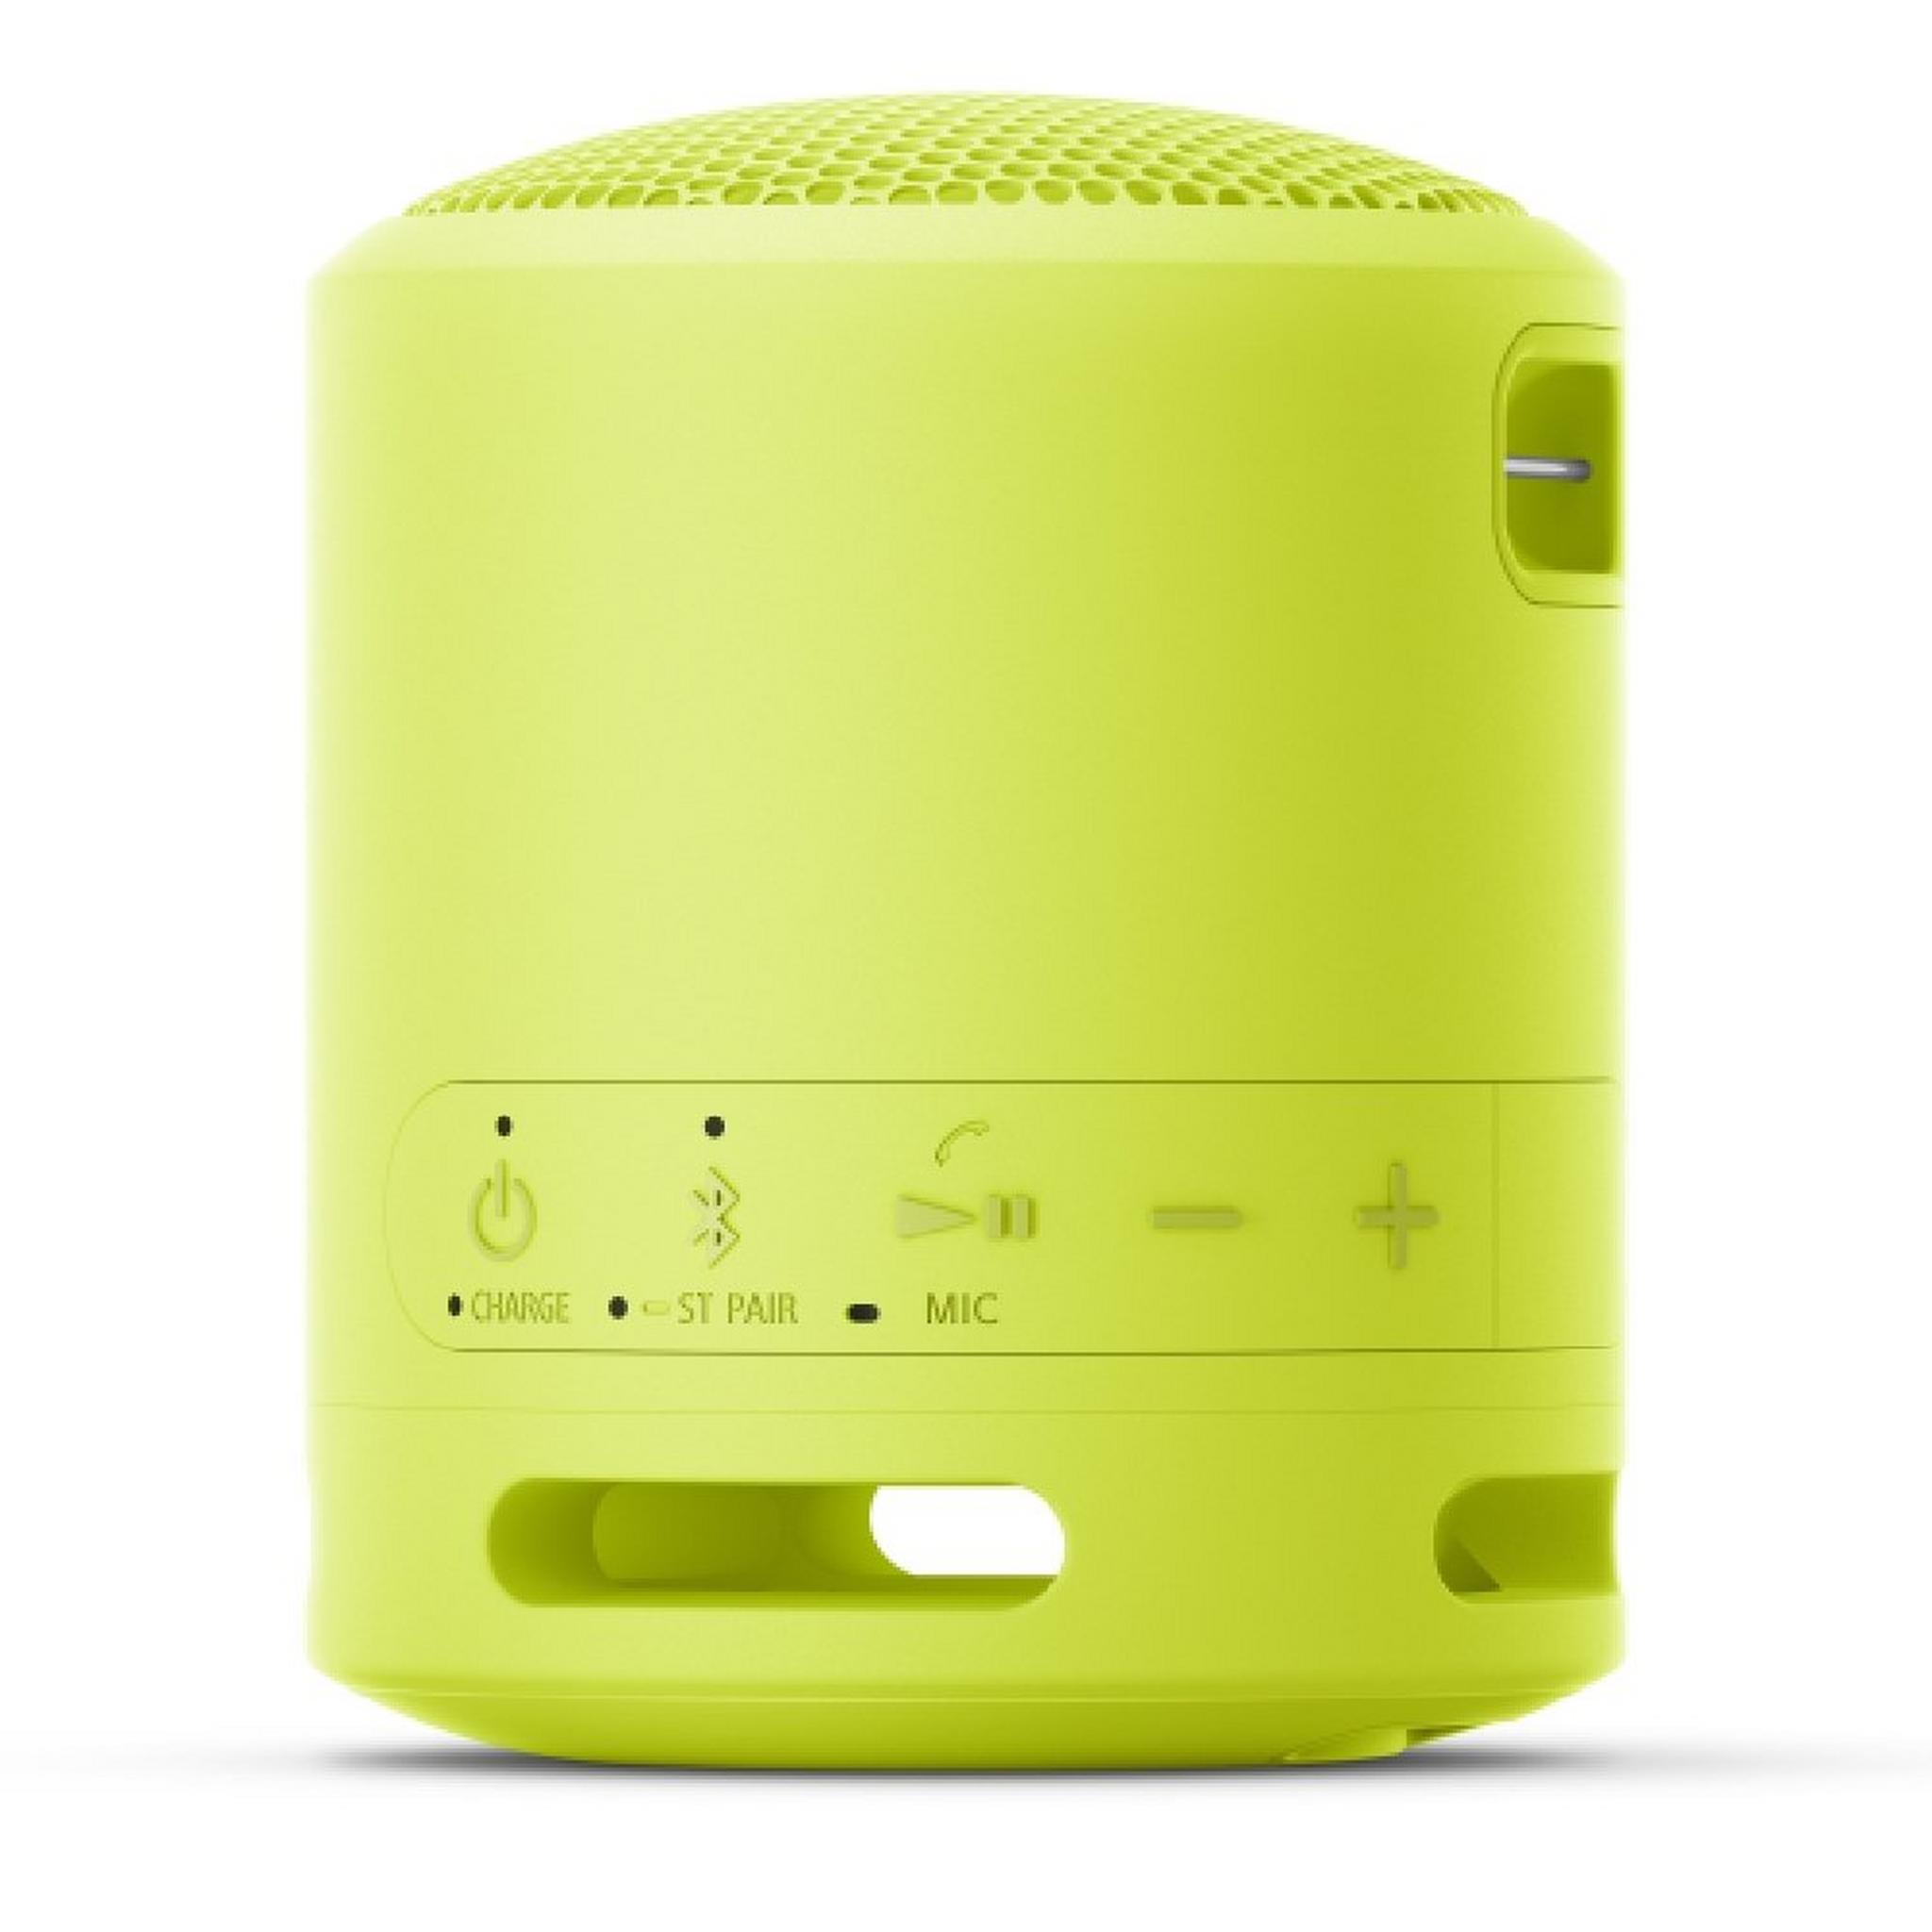 Sony XB13 Wireless Waterproof 16 hrs Speaker - Lime Green